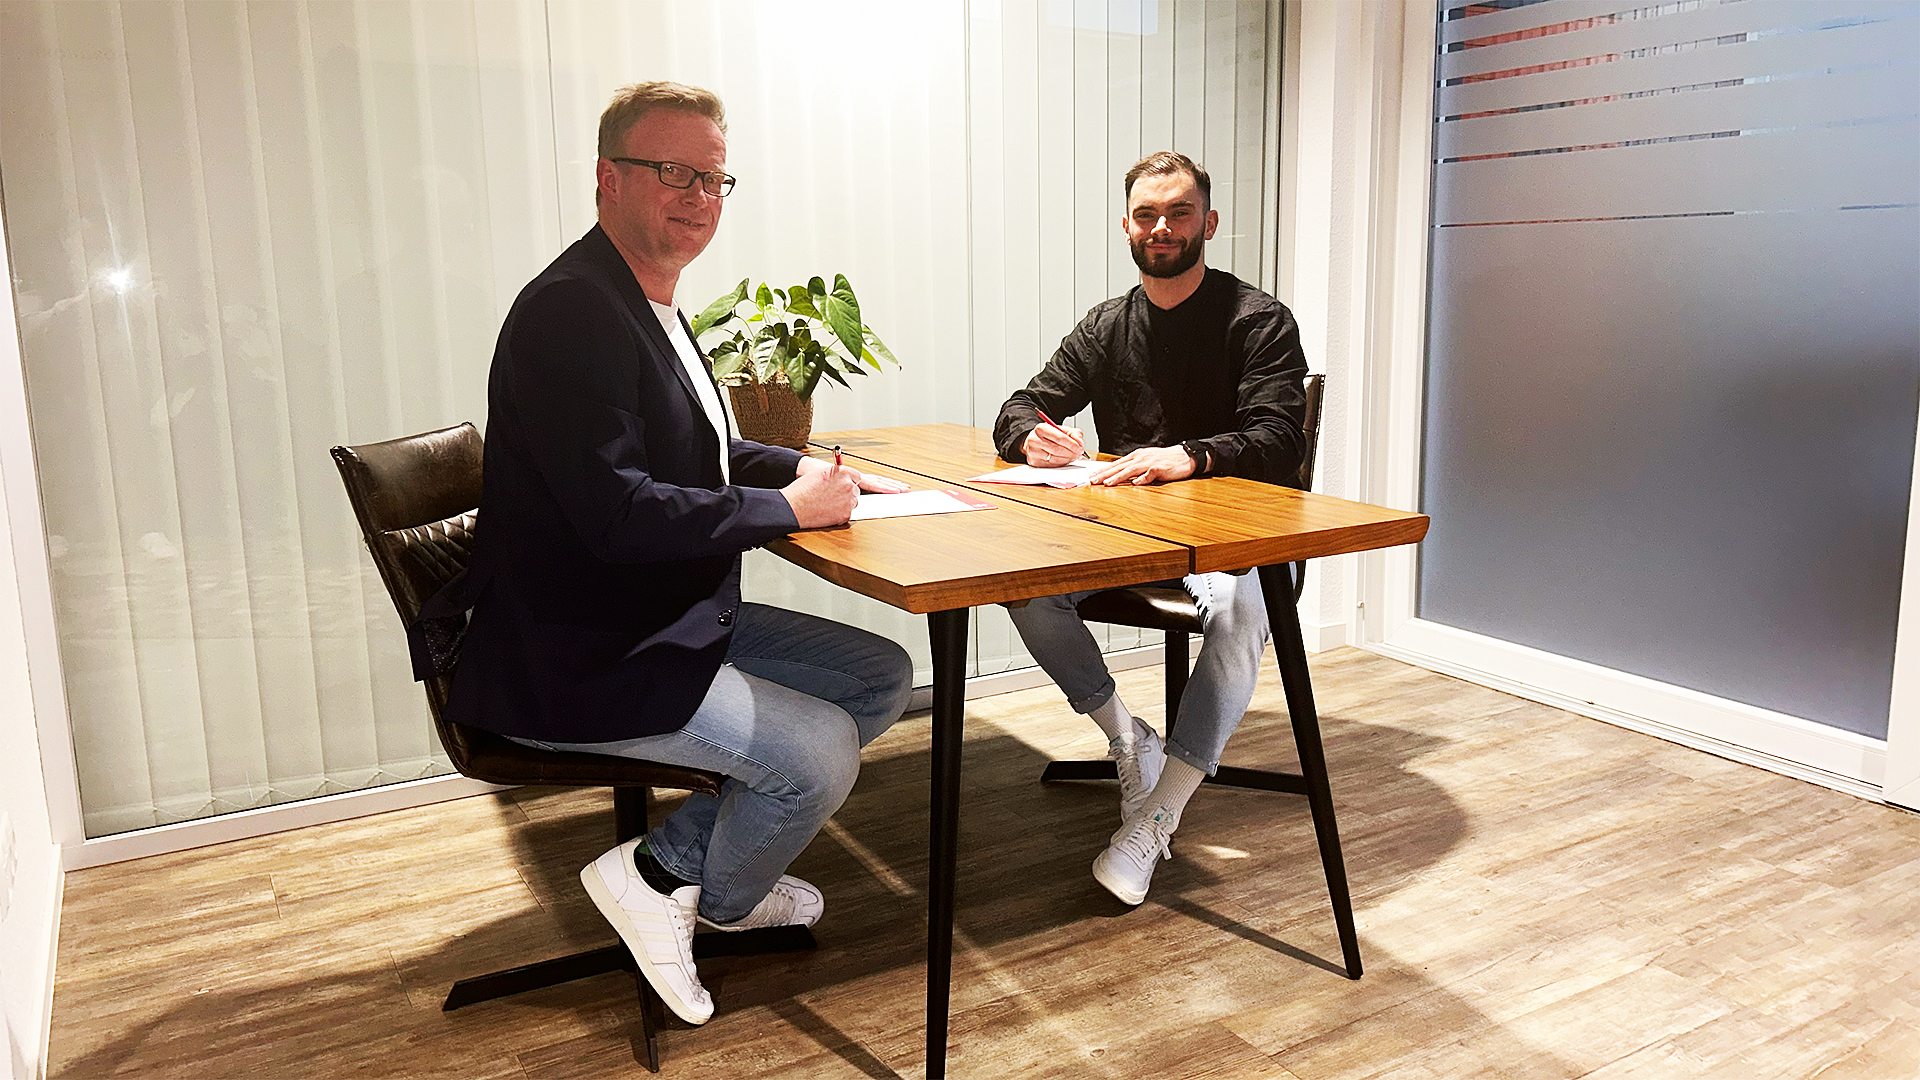 Freuen sich auf die Zusammenarbeit: HSG-Geschäftsführer Matthias Stroot und Neuzugang Björn Zintel (rechts). 
Foto: HSG